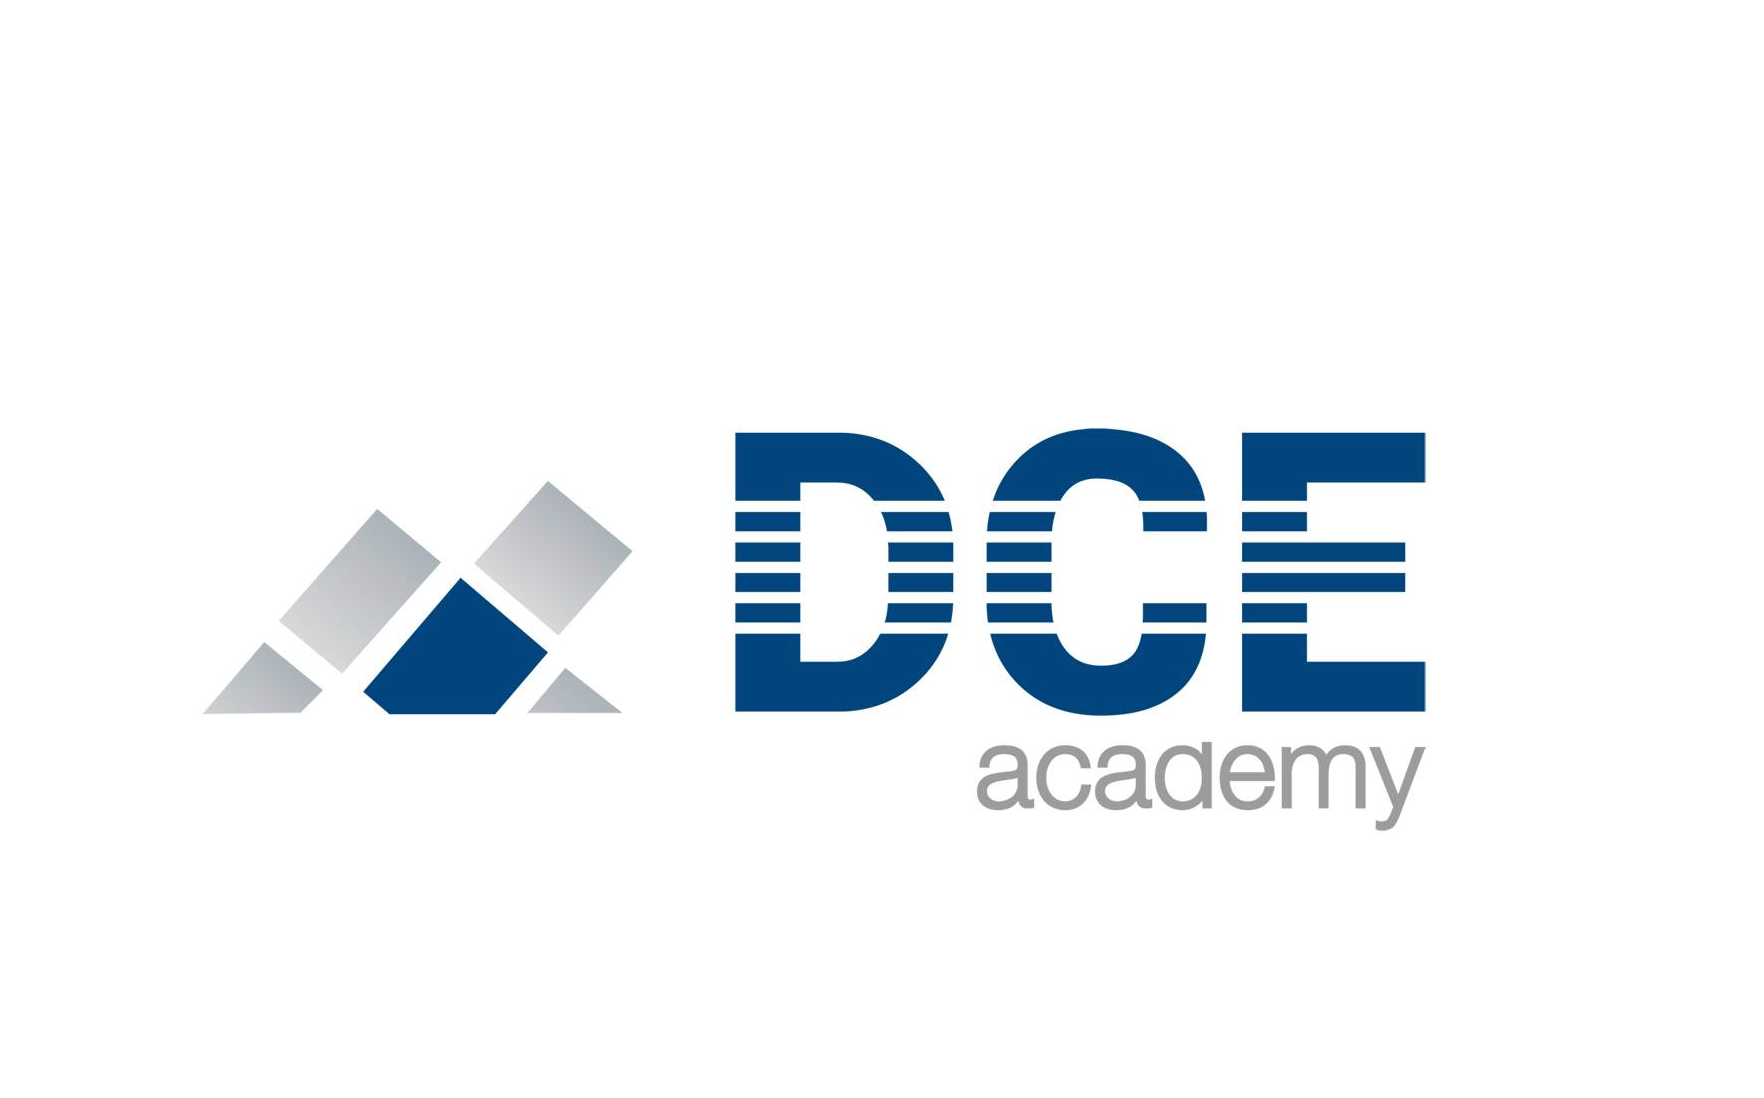 DCE Academy